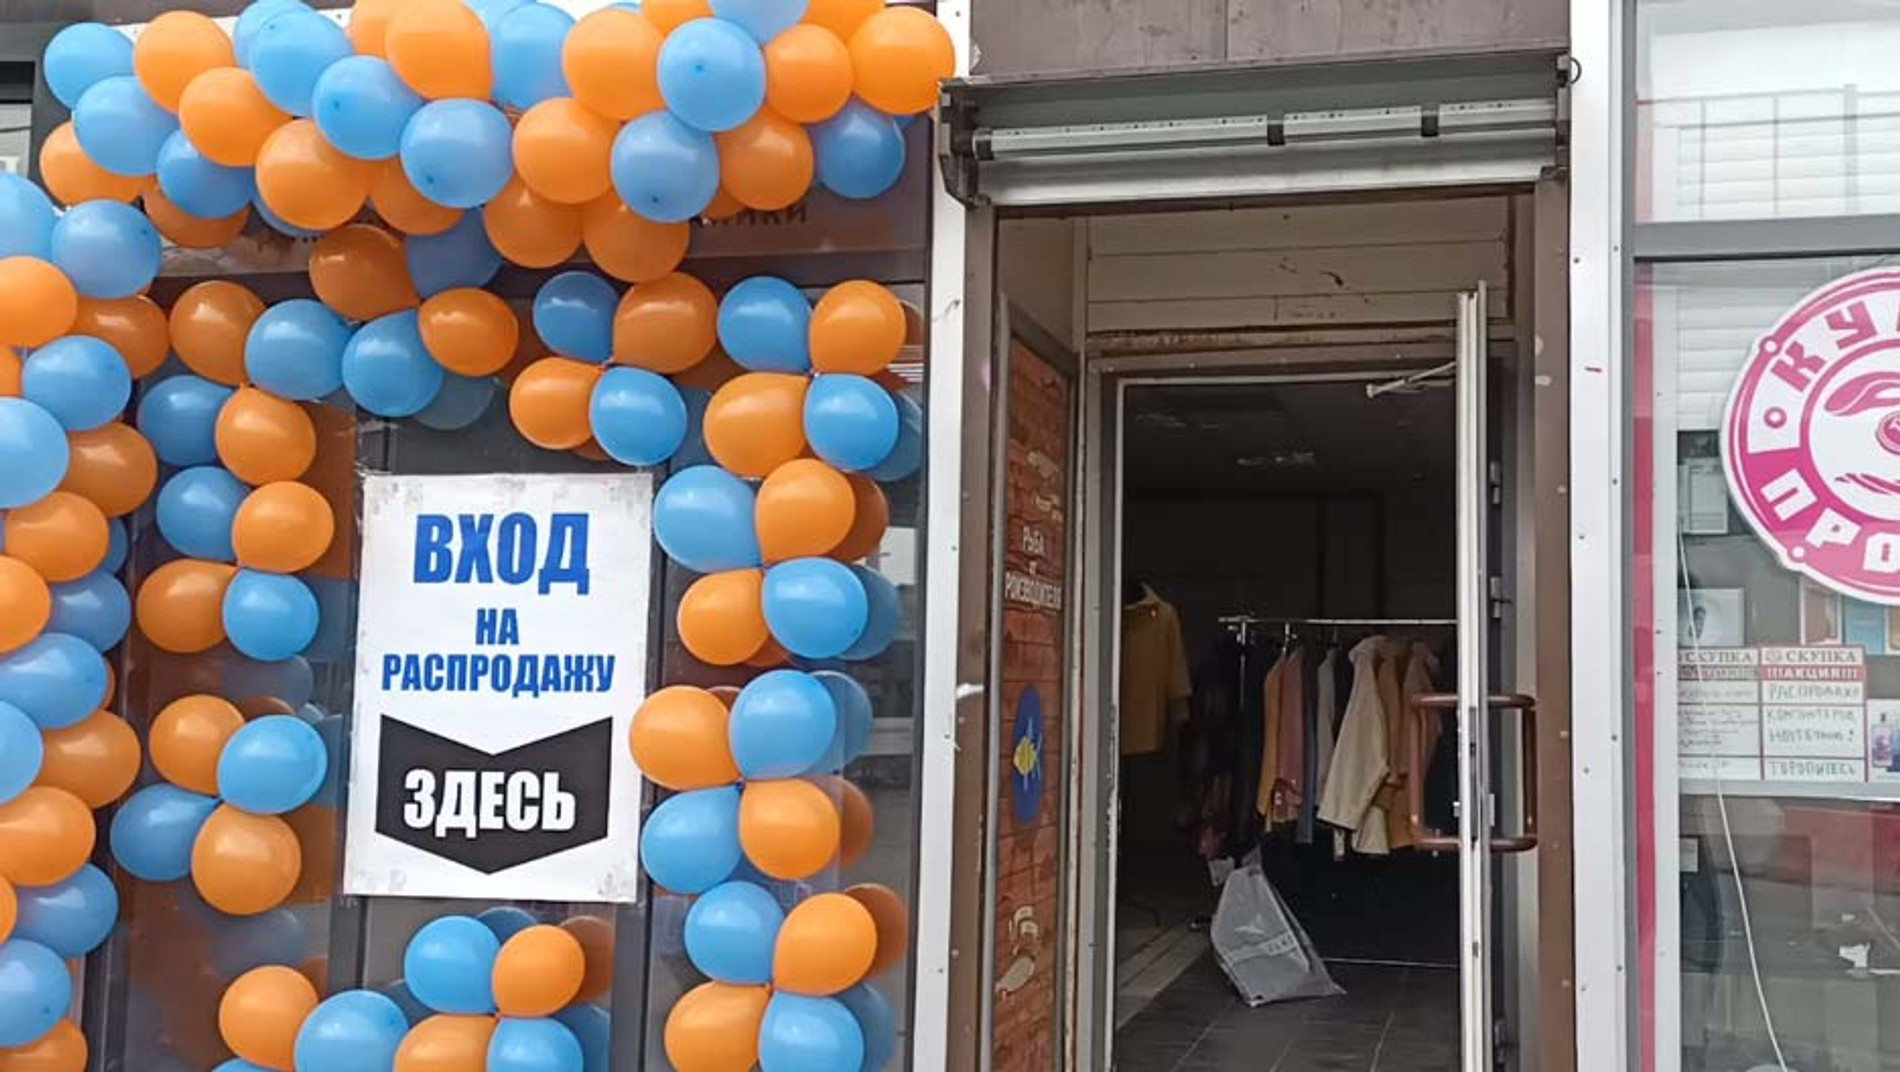 Типичный магазин «распродажи». Источник: Зеленоград.ру